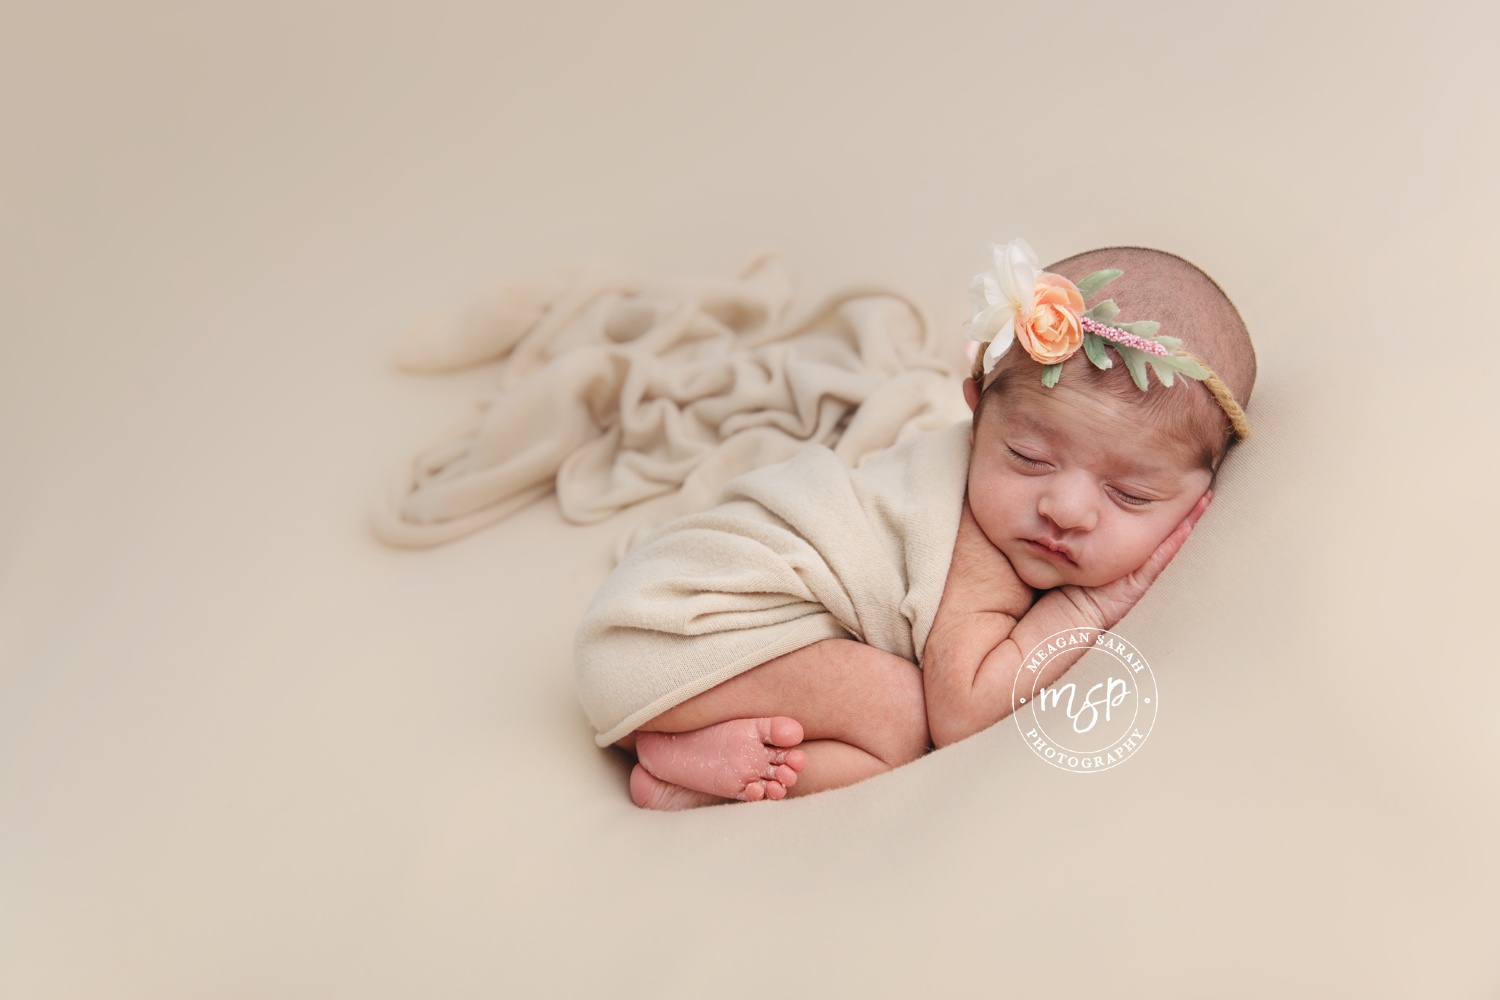 20181219_7133_Newborn_Maya-Nour_Meagan_Sarah_Photography_Leeds_WEB.jpg